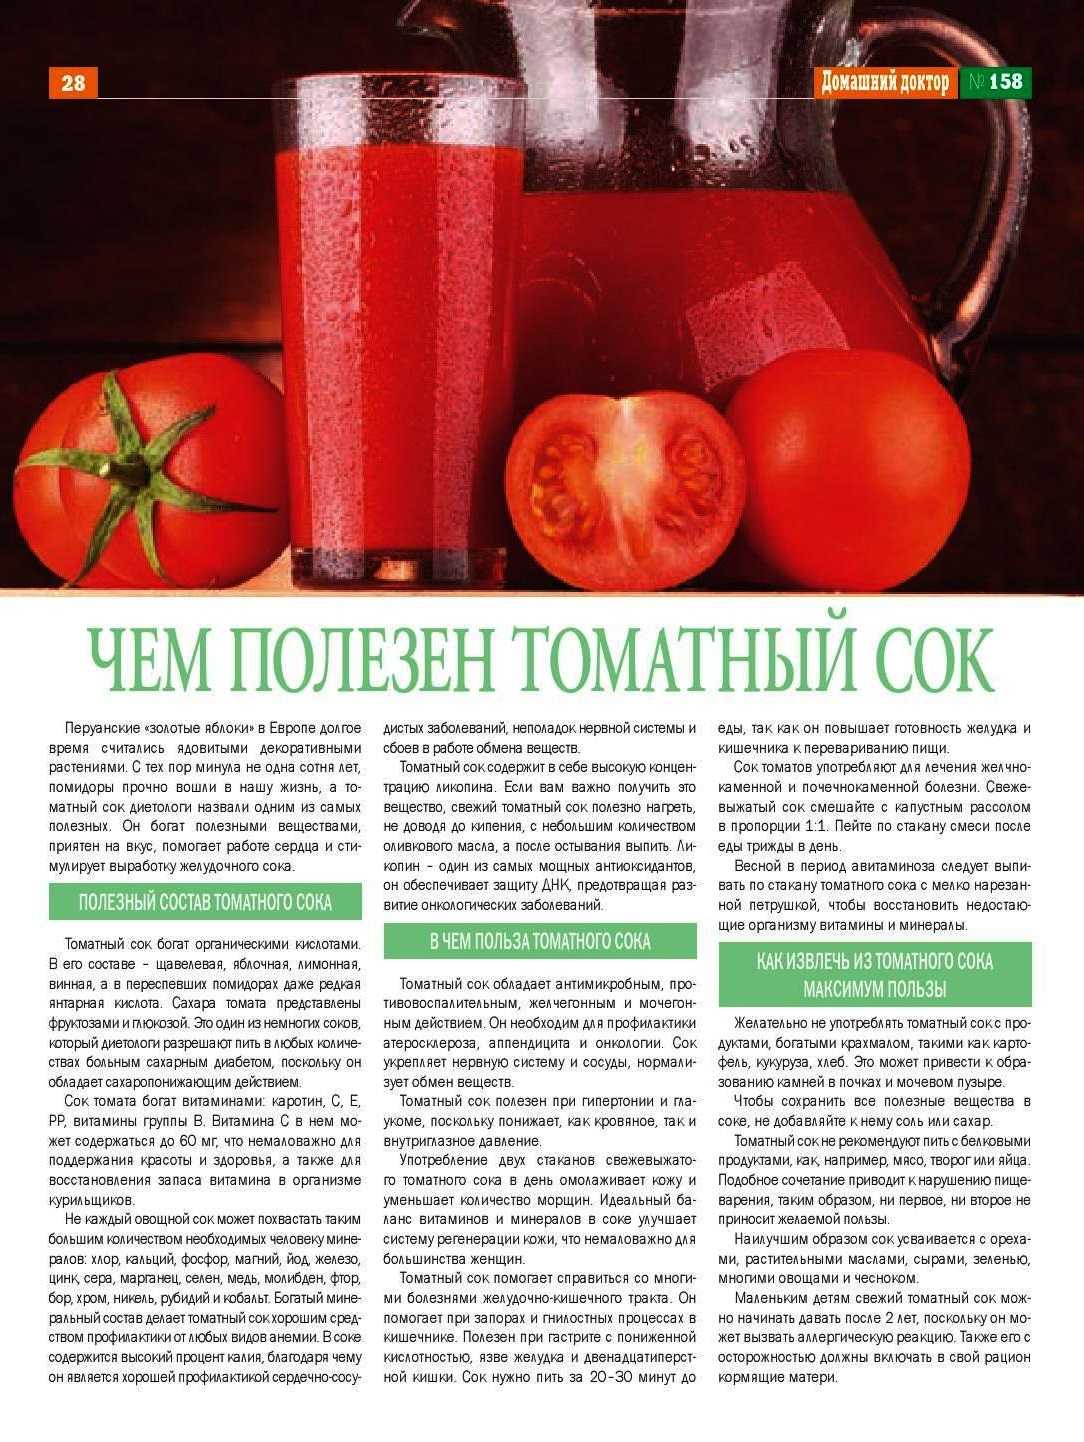 Какие соки нужно пить. Чем полезен томатный сок. Чем полезен томатныысок. Чем полезен томатный сок для организма. Сок томатный полезный сок.